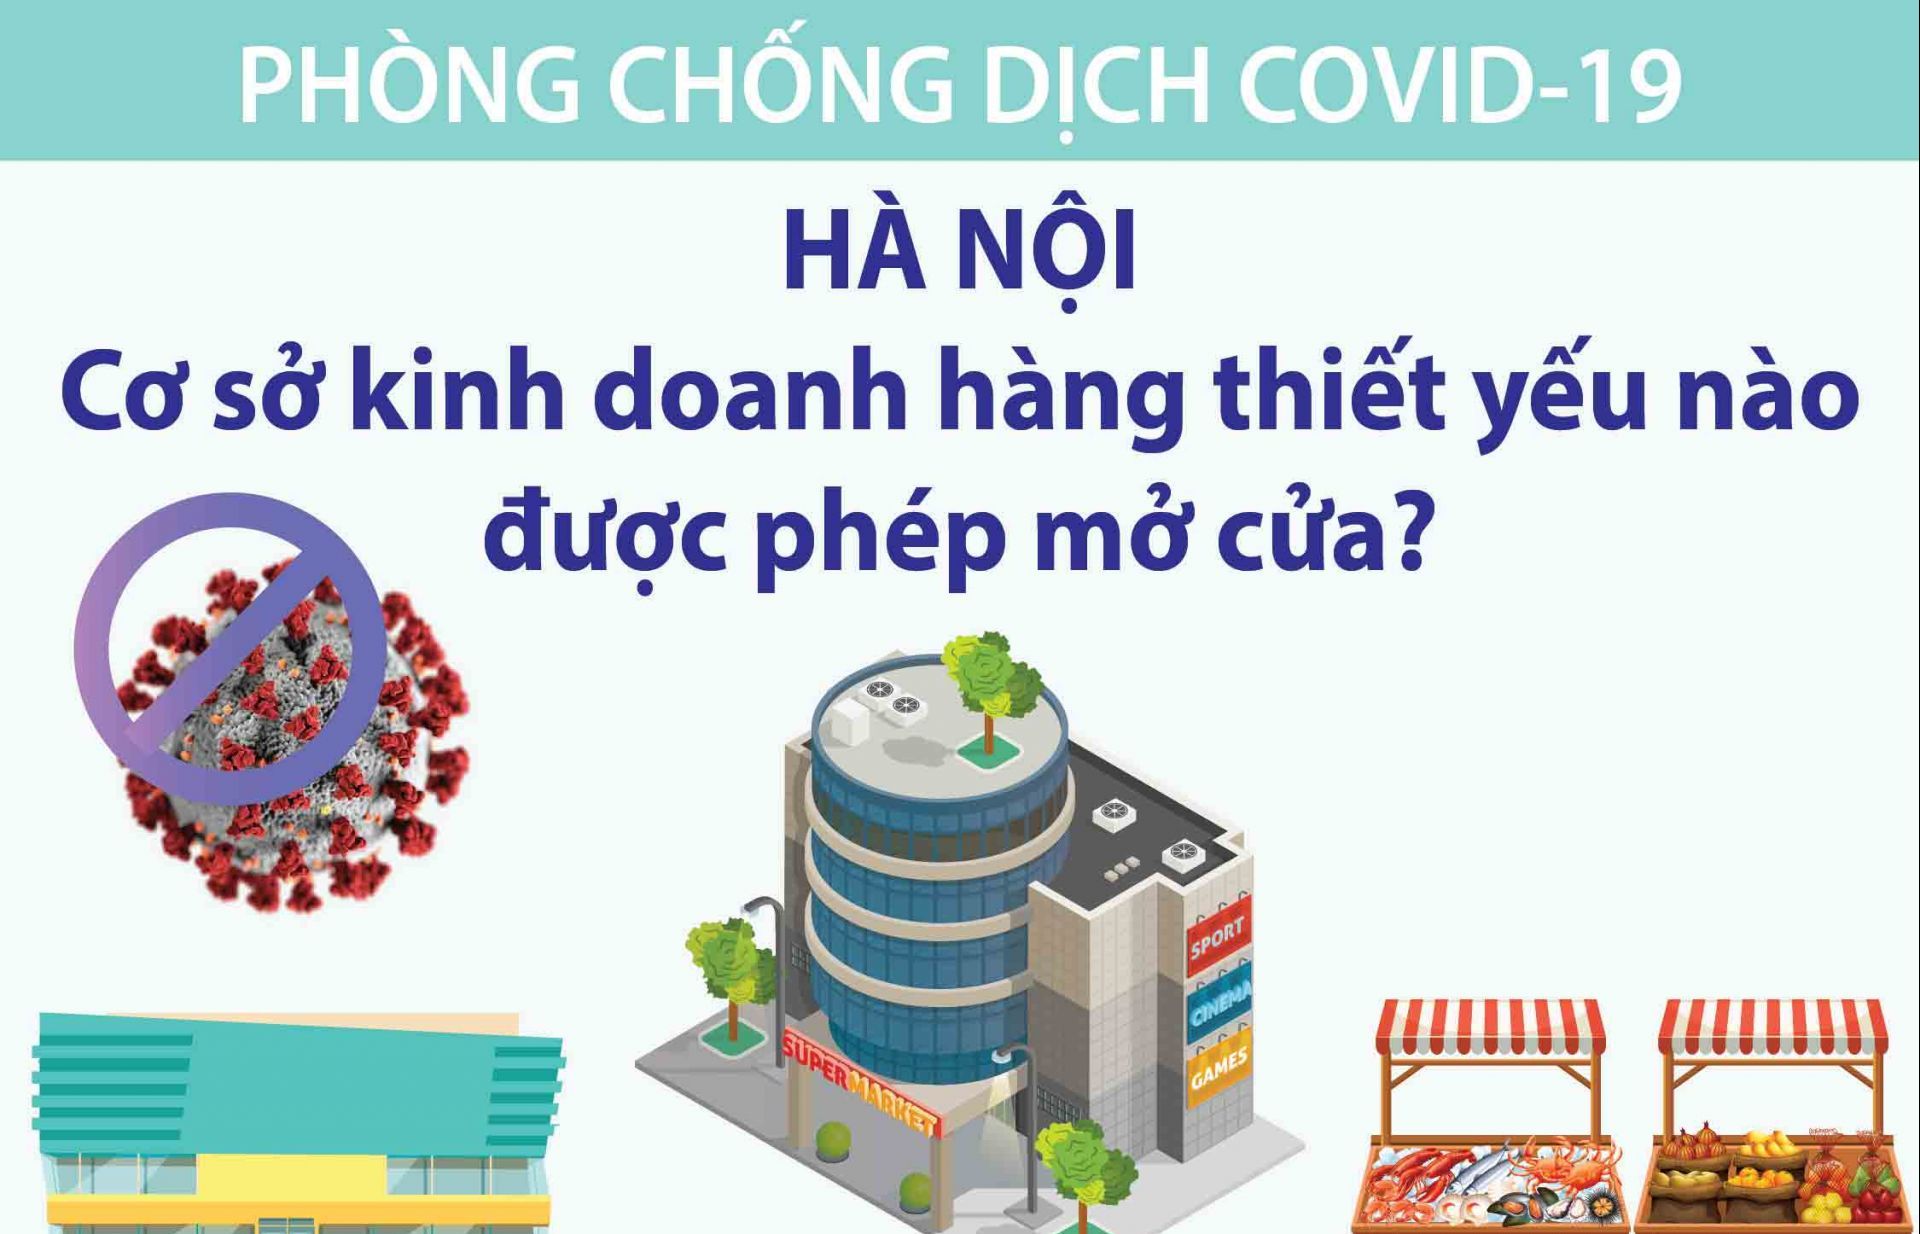 Covid-19: Những cơ sở kinh doanh hàng thiết yếu nào ở Hà Nội được phép mở cửa?